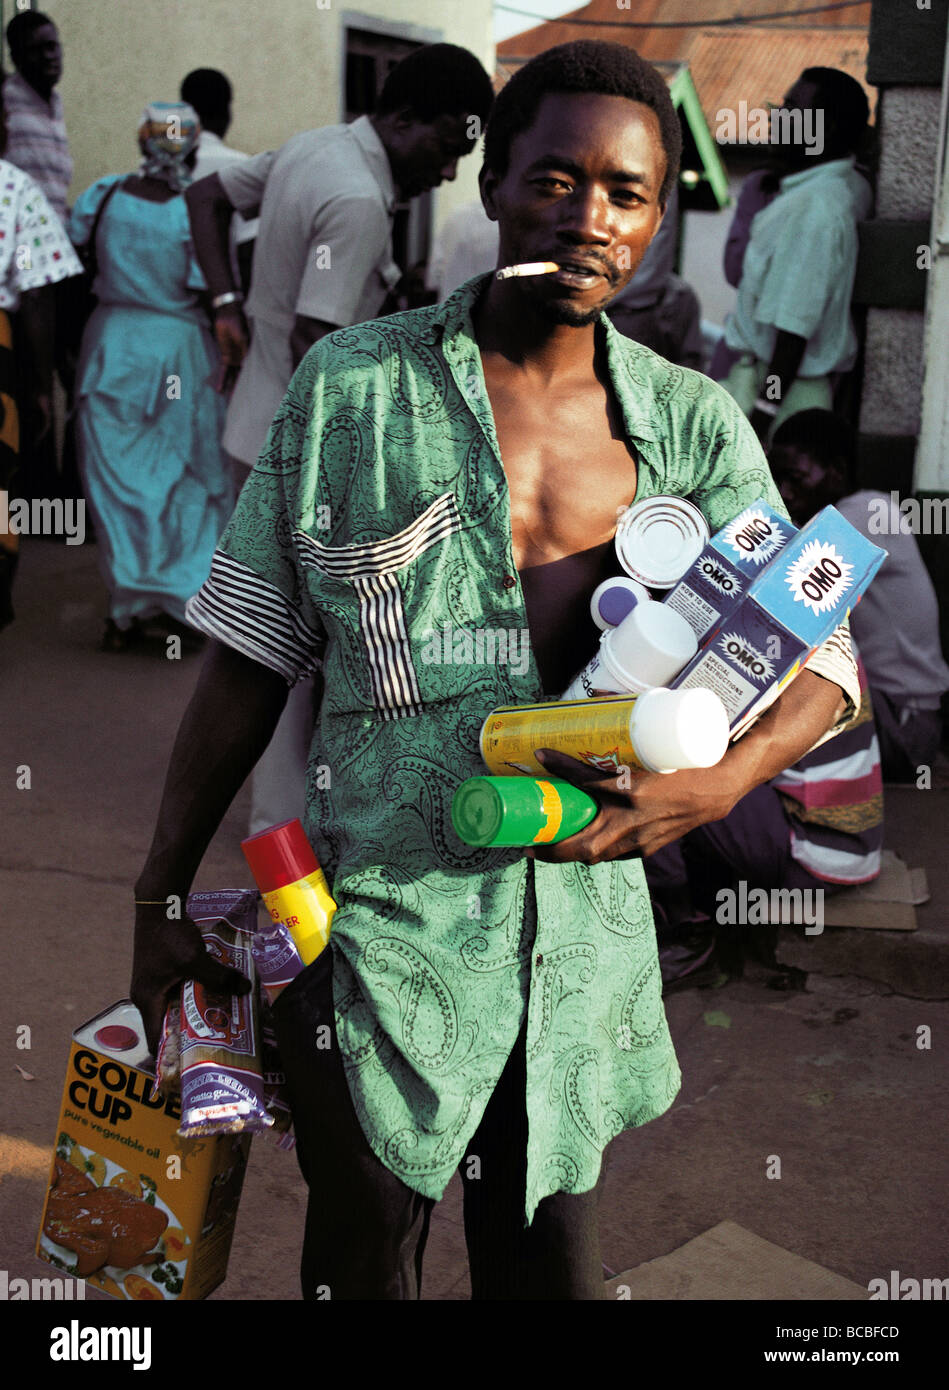 L'Afrique noire mâle homme chargé de clientèle affaire d'achats de quitter l'Ouganda Kampala marché Afrique de l'Est avec la cigarette Banque D'Images